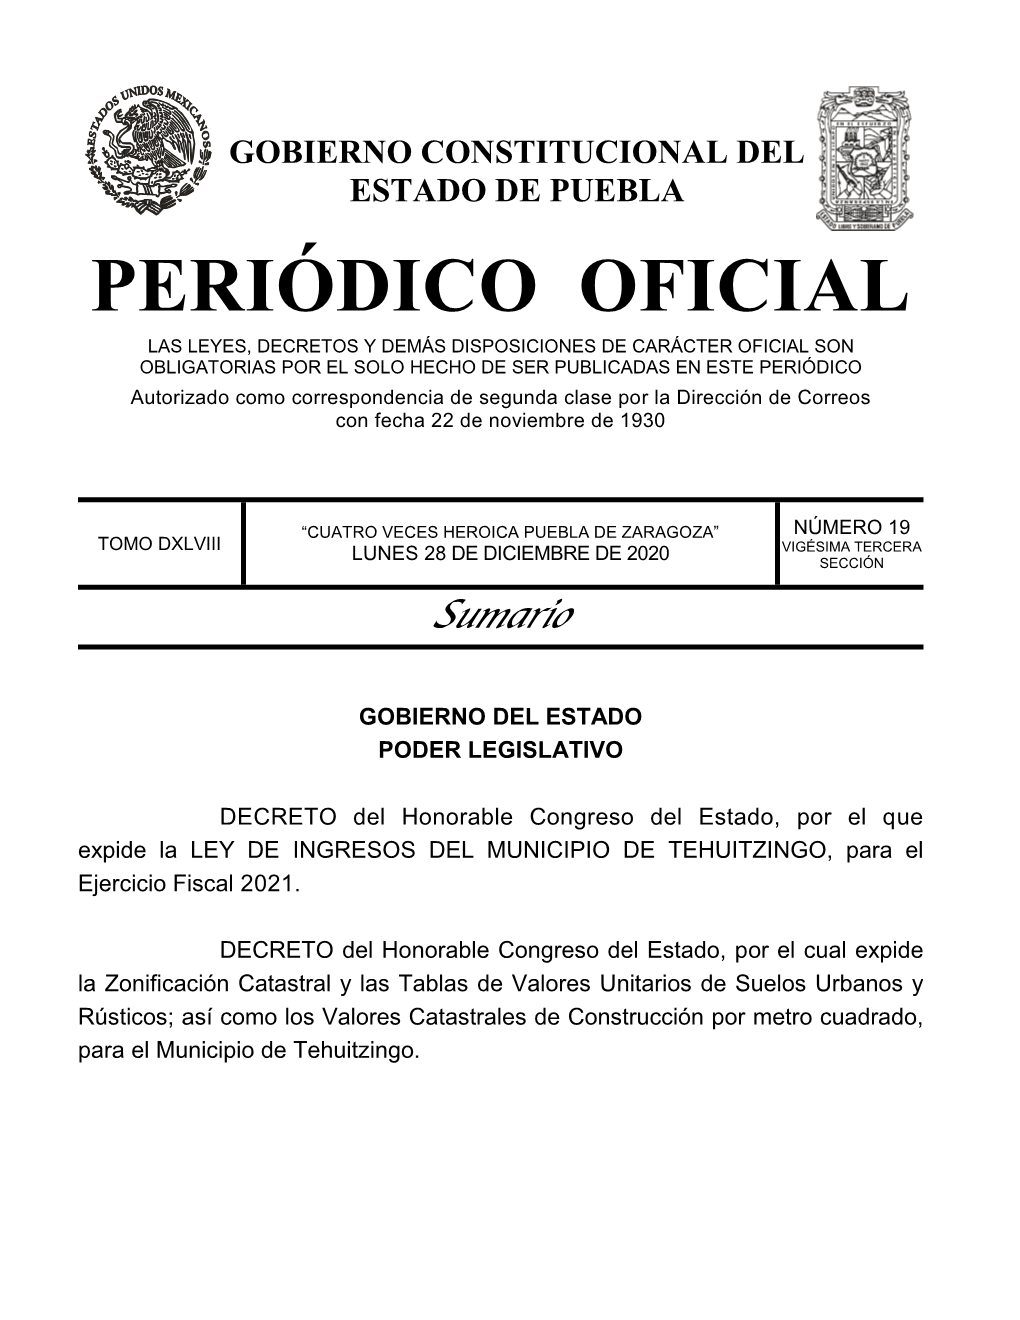 LEY DE INGRESOS DEL MUNICIPIO DE TEHUITZINGO, Para El Ejercicio Fiscal 2021